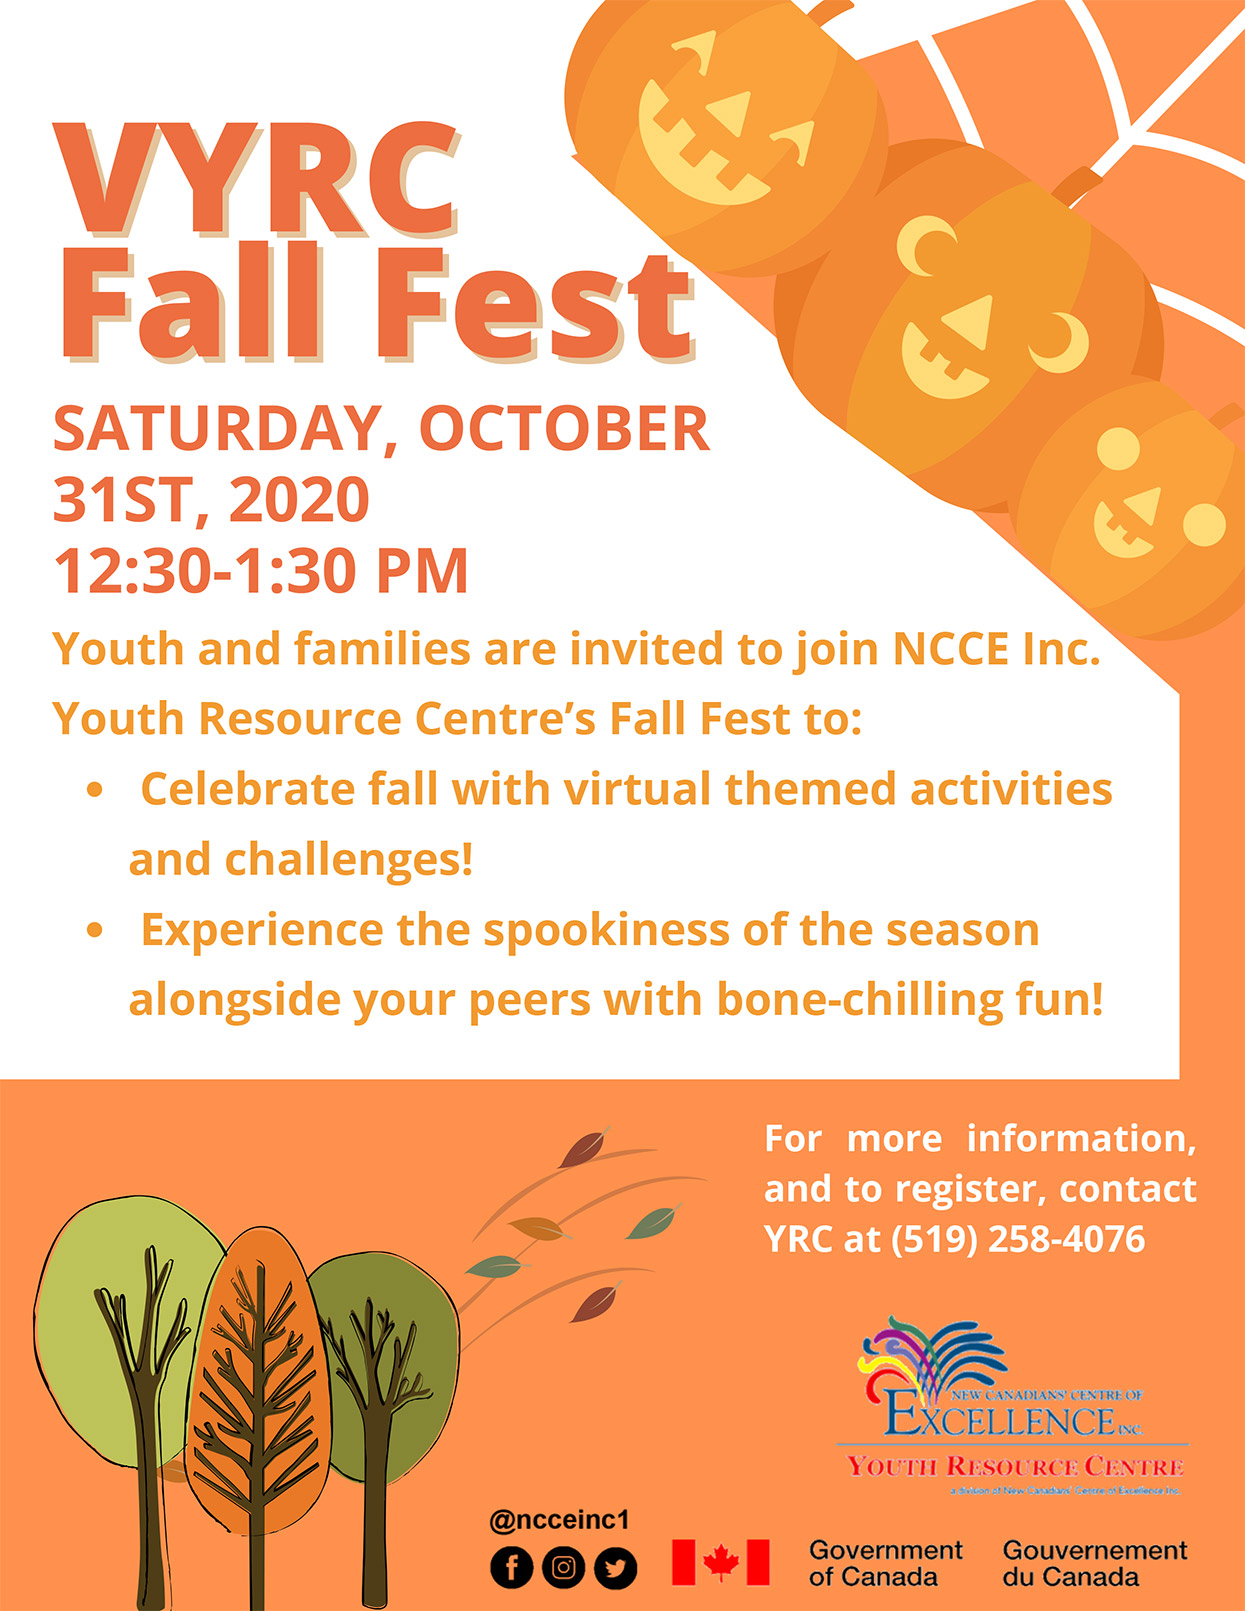 VYRC Fall Fest